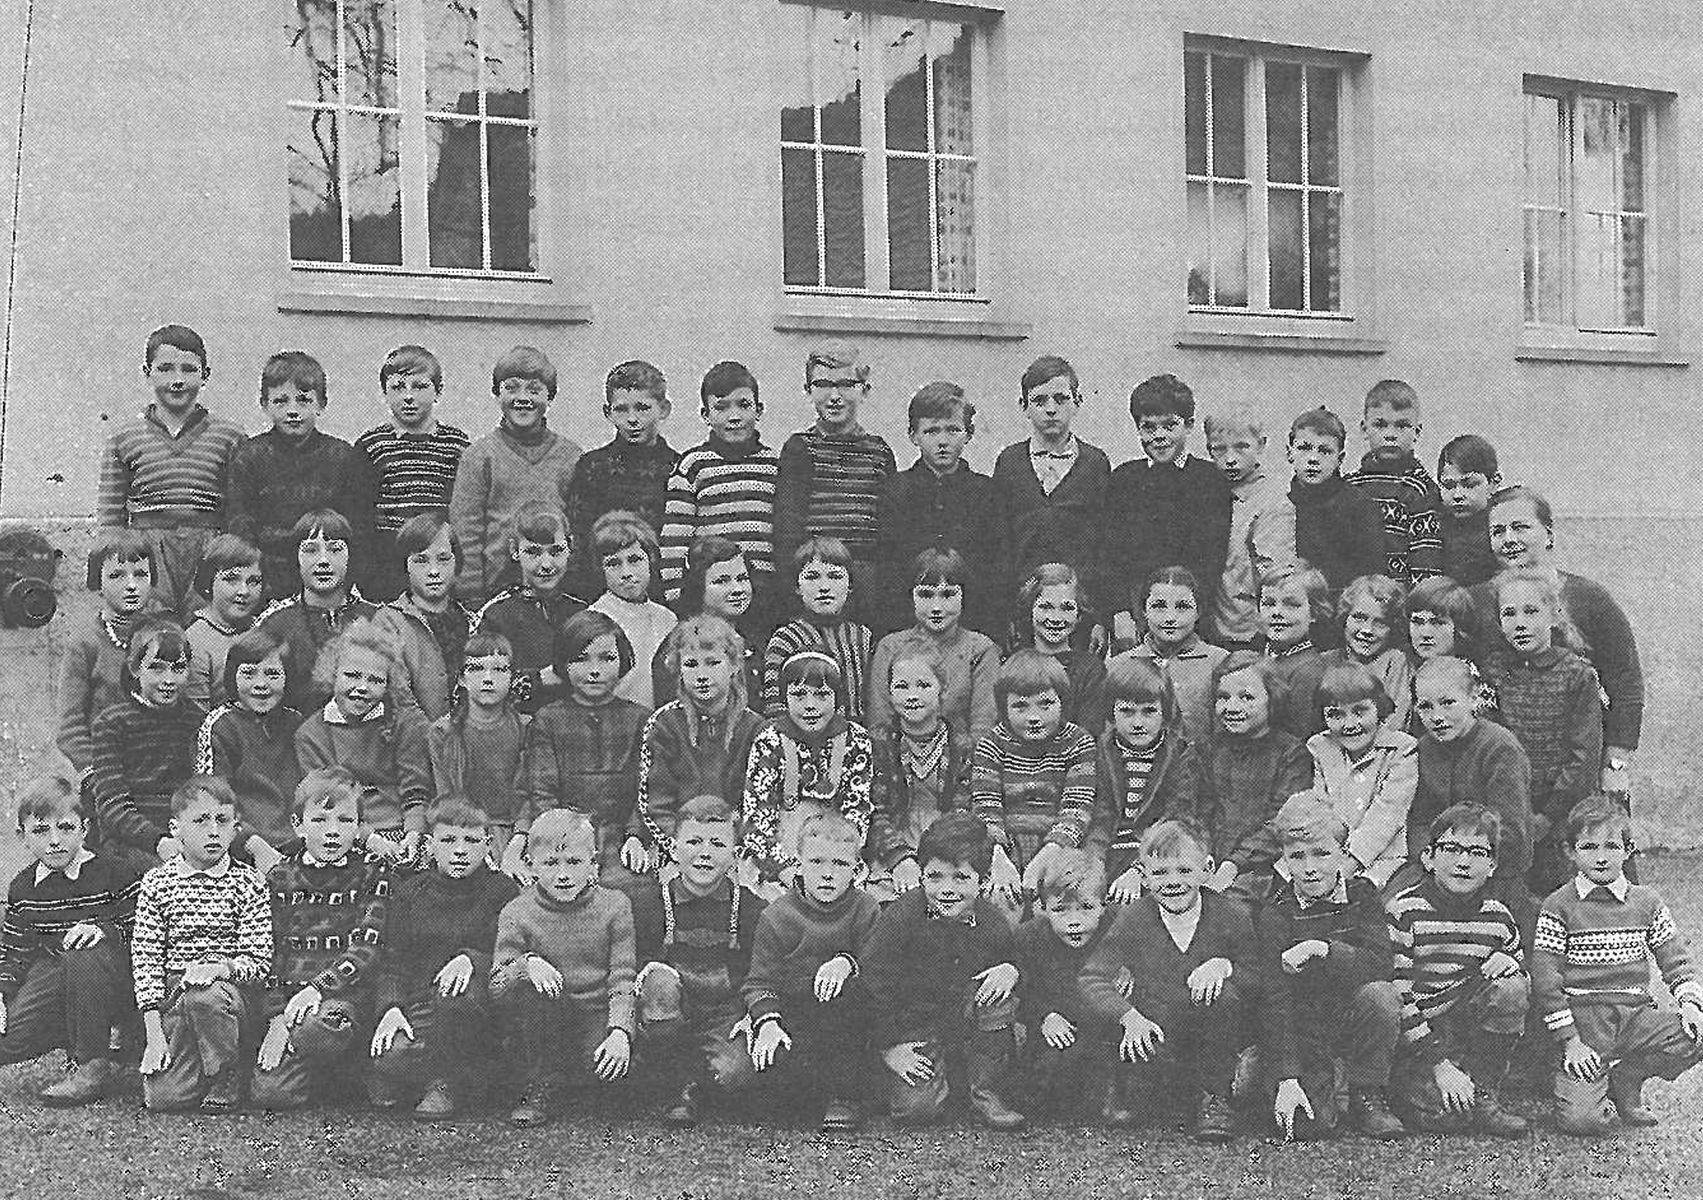  Schopflocher Skizzen 1965 Frau Bauer mit den Schülern der Klassen 1-4 - Bild wird mit einem Klick vergrößert 